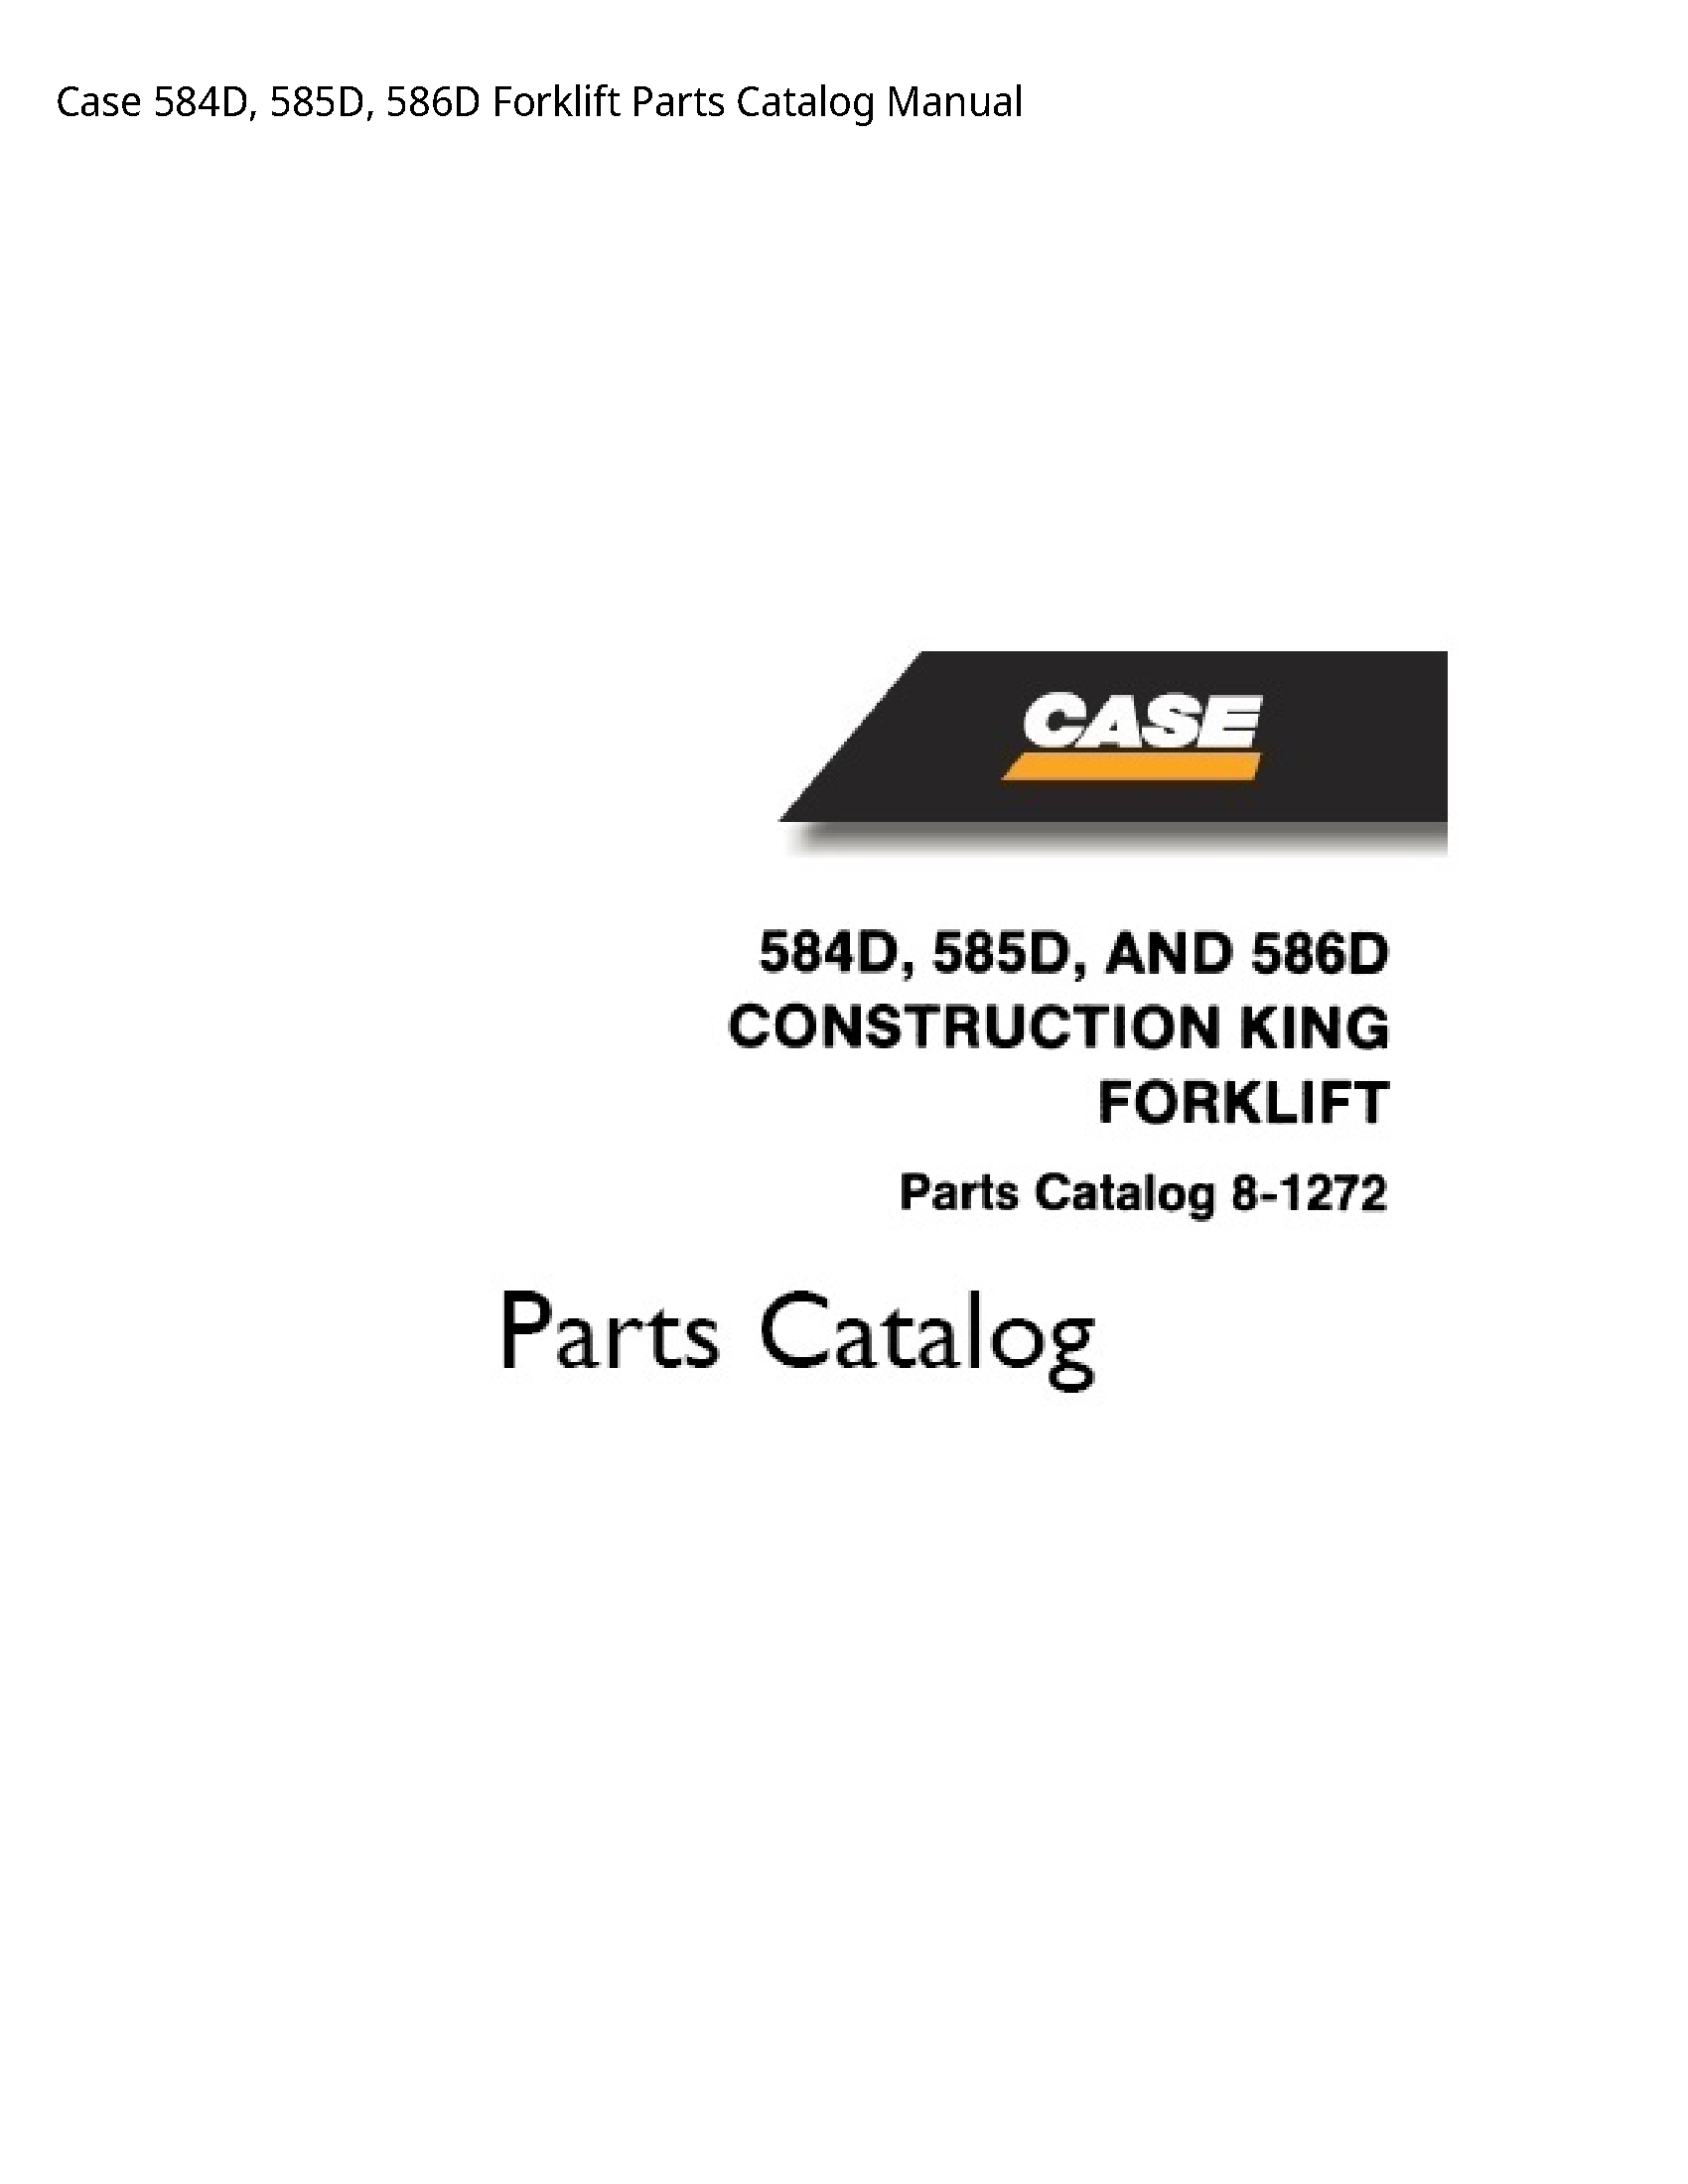 Case/Case IH 584D Forklift Parts Catalog manual